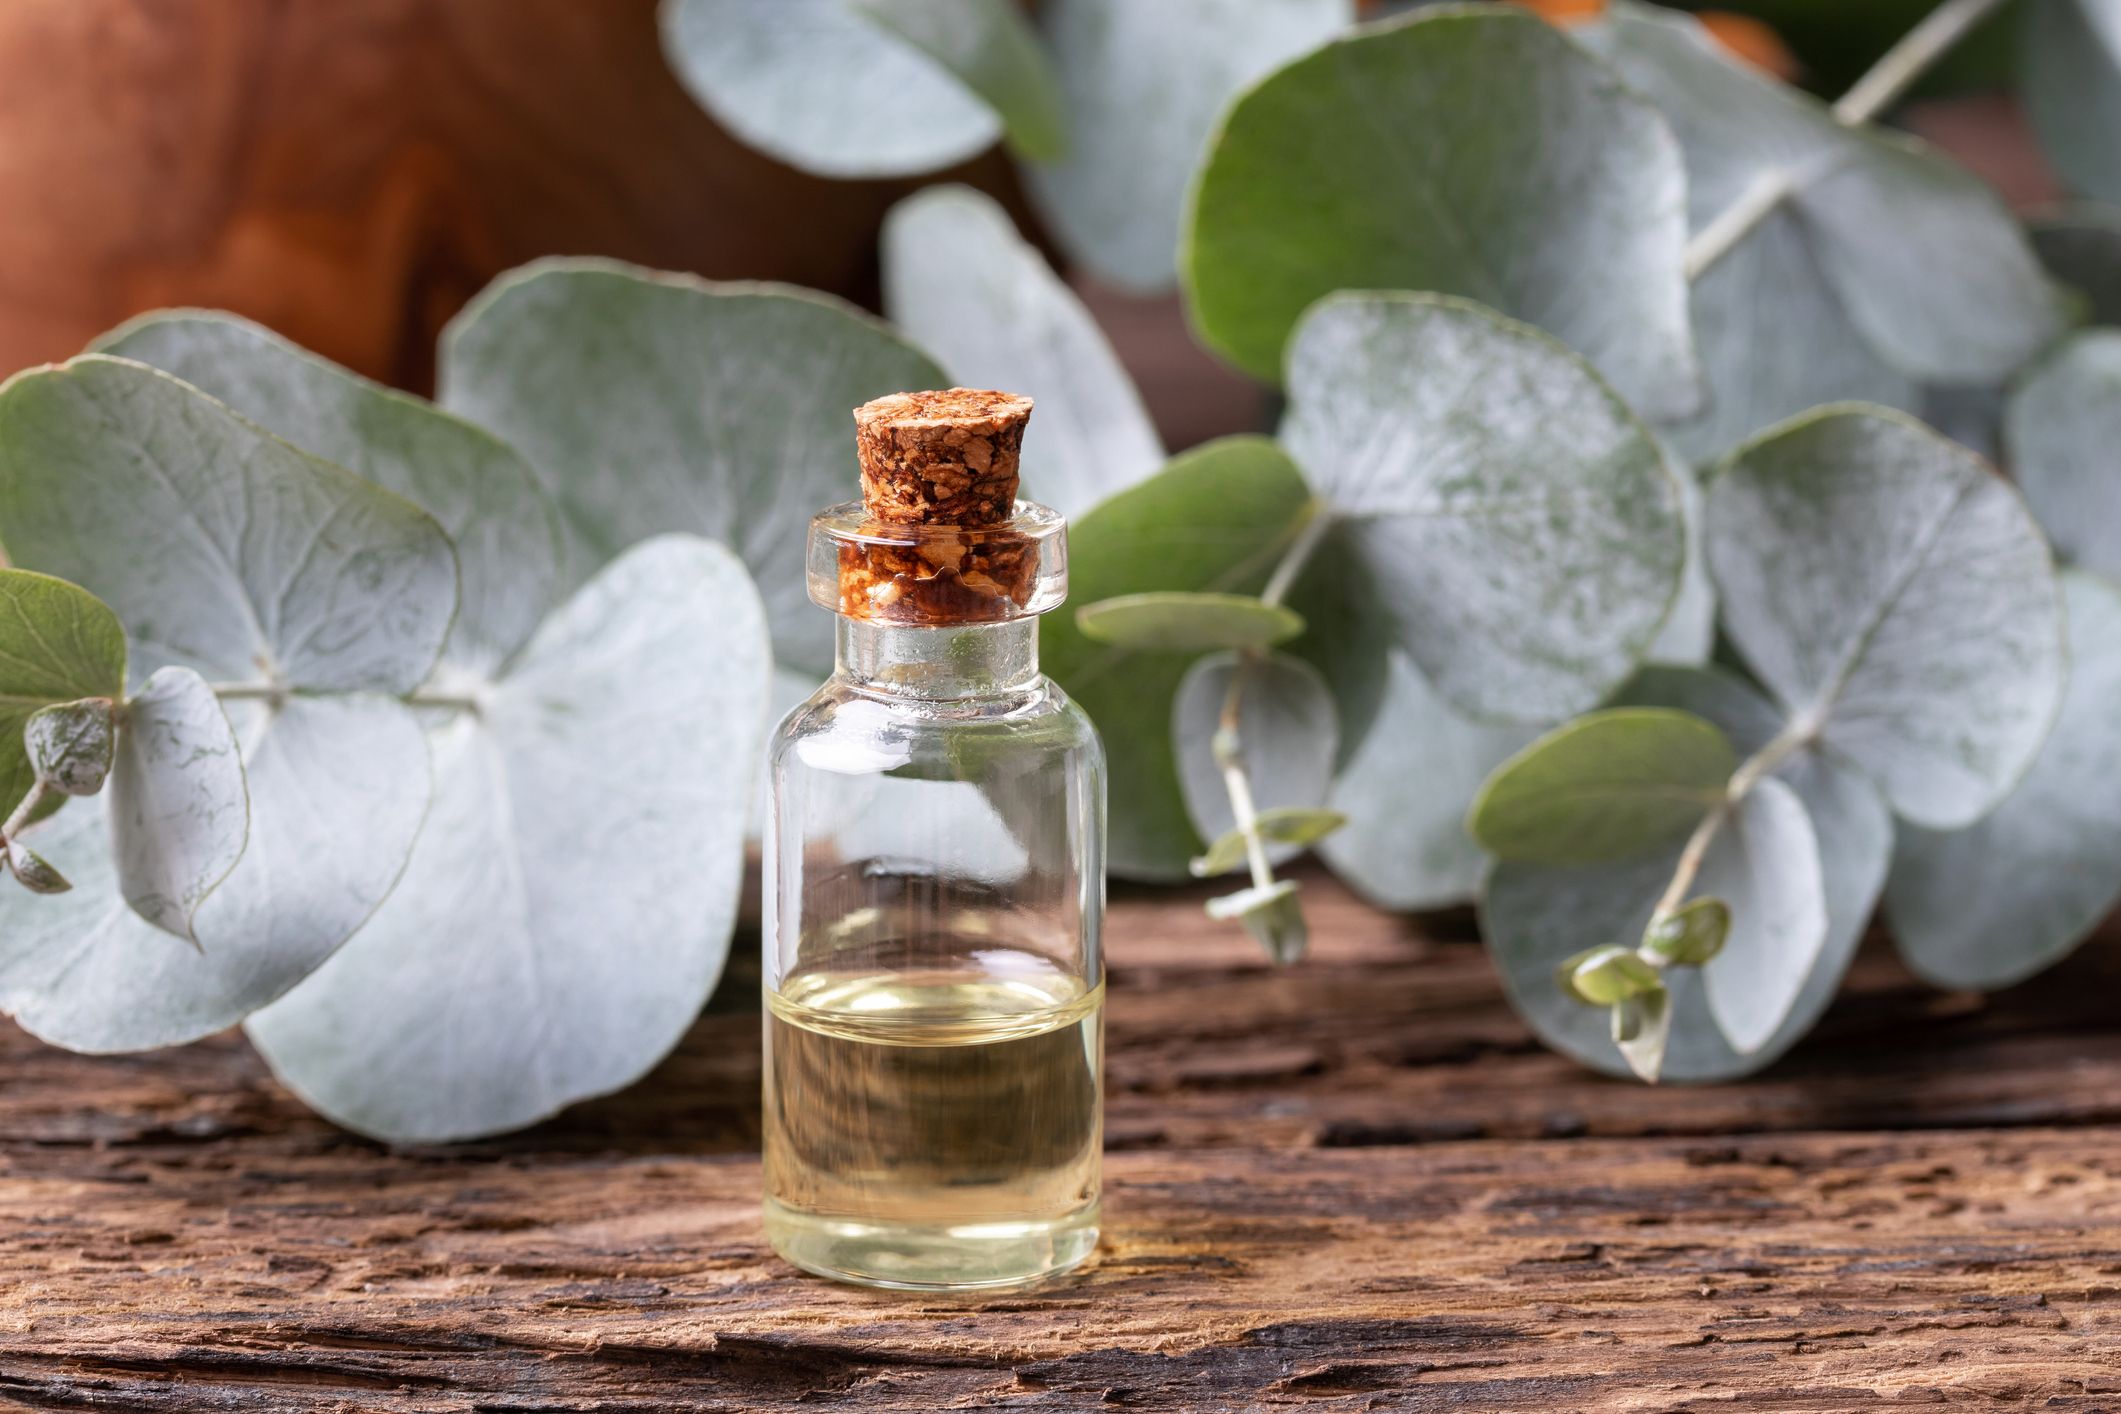 9 Amazing Eucalyptus Oil Benefits - How to Use Eucalyptus Oil